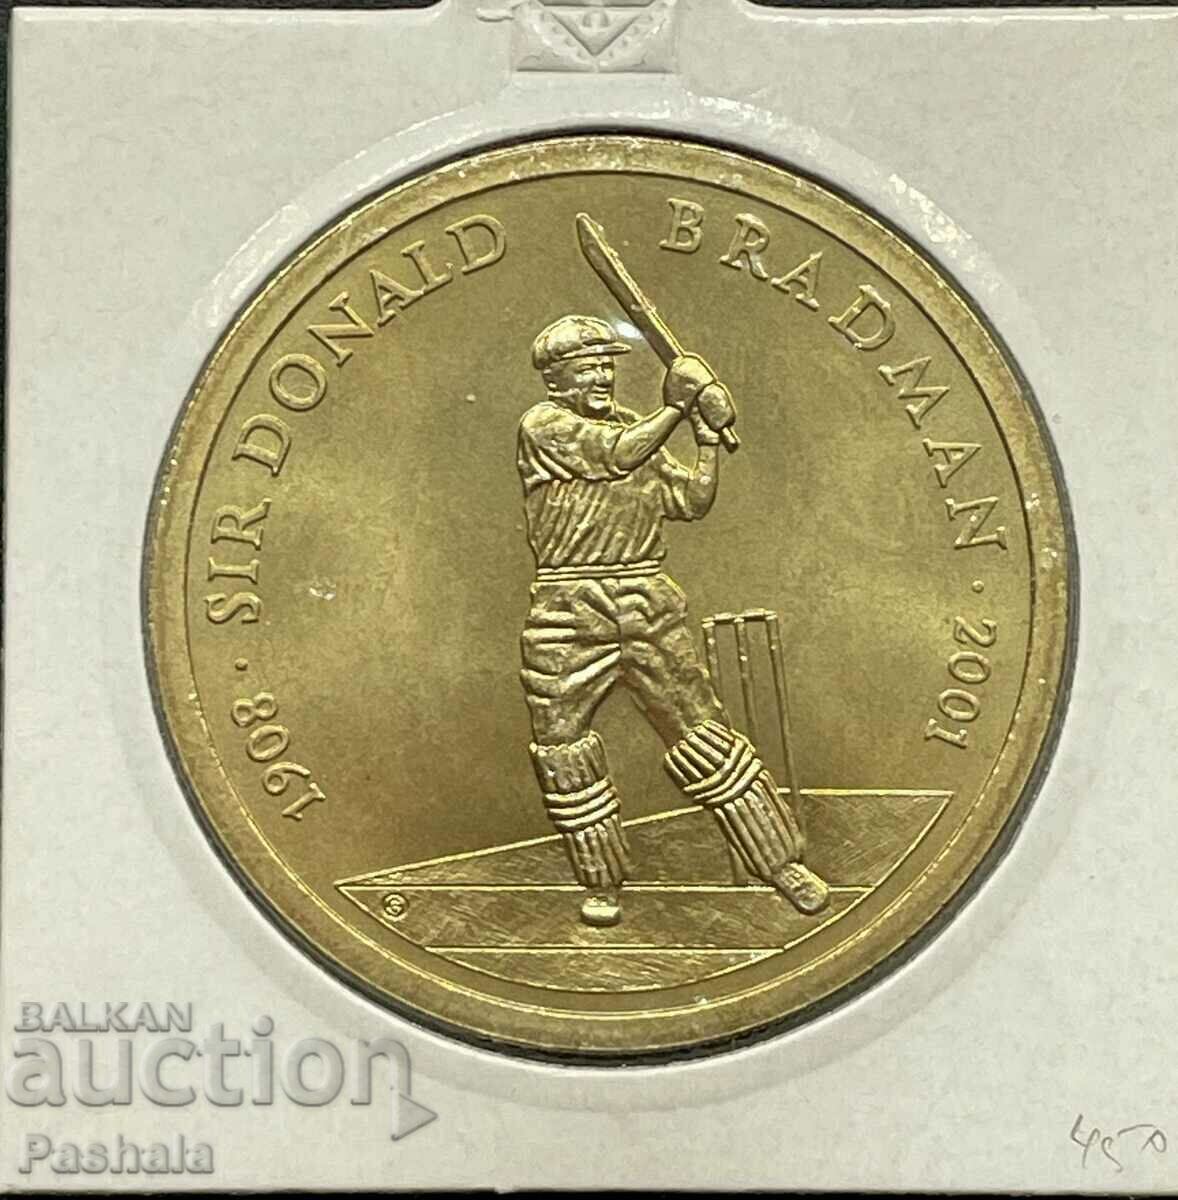 Αυστραλία $5 2001